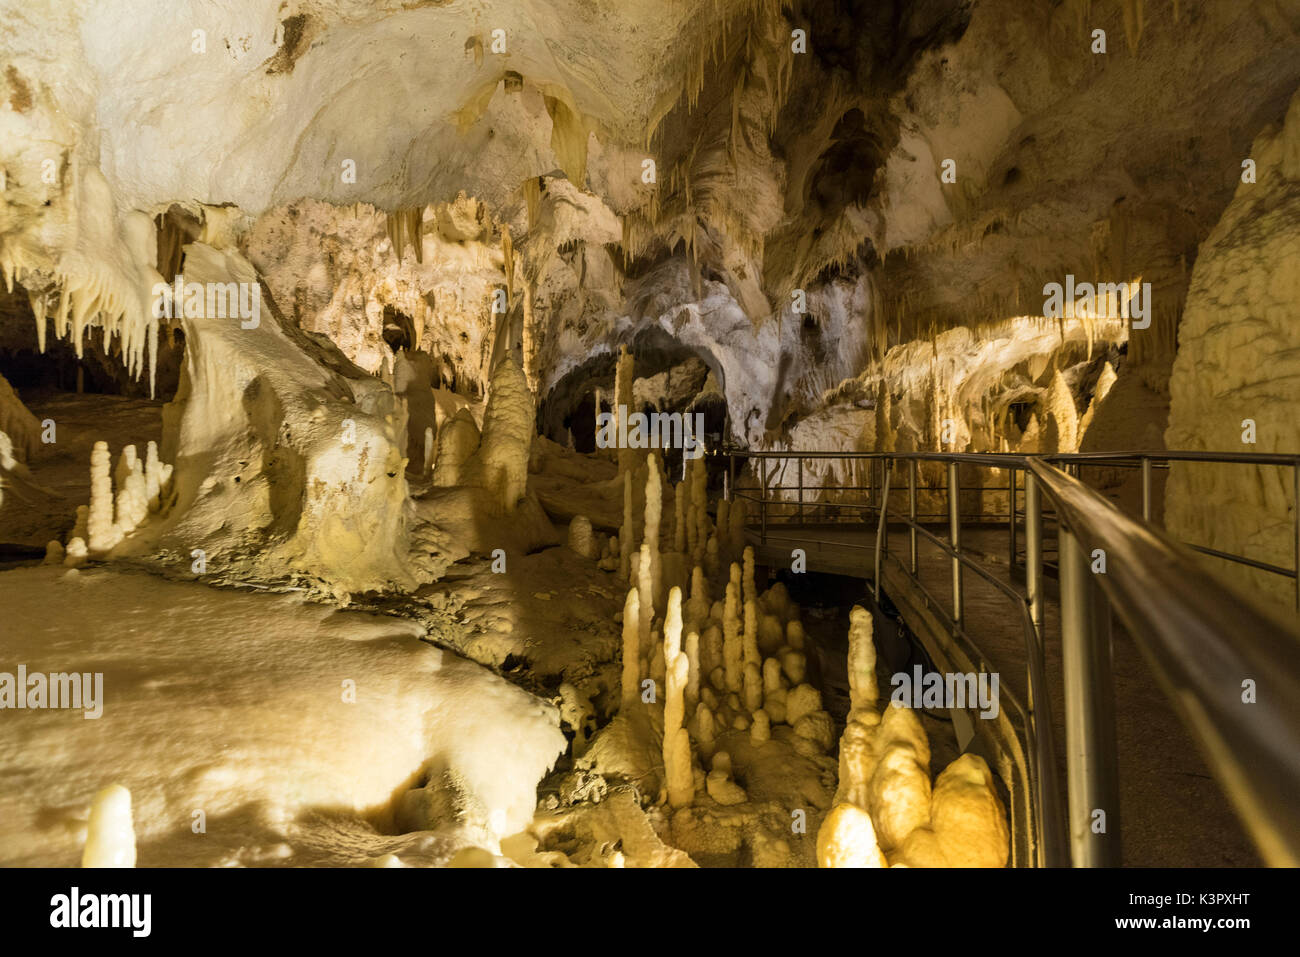 El espectáculo natural de cuevas de Frasassi con afiladas estalactitas y estalagmitas Genga Provincia de Ancona Marche Italia Europa Foto de stock